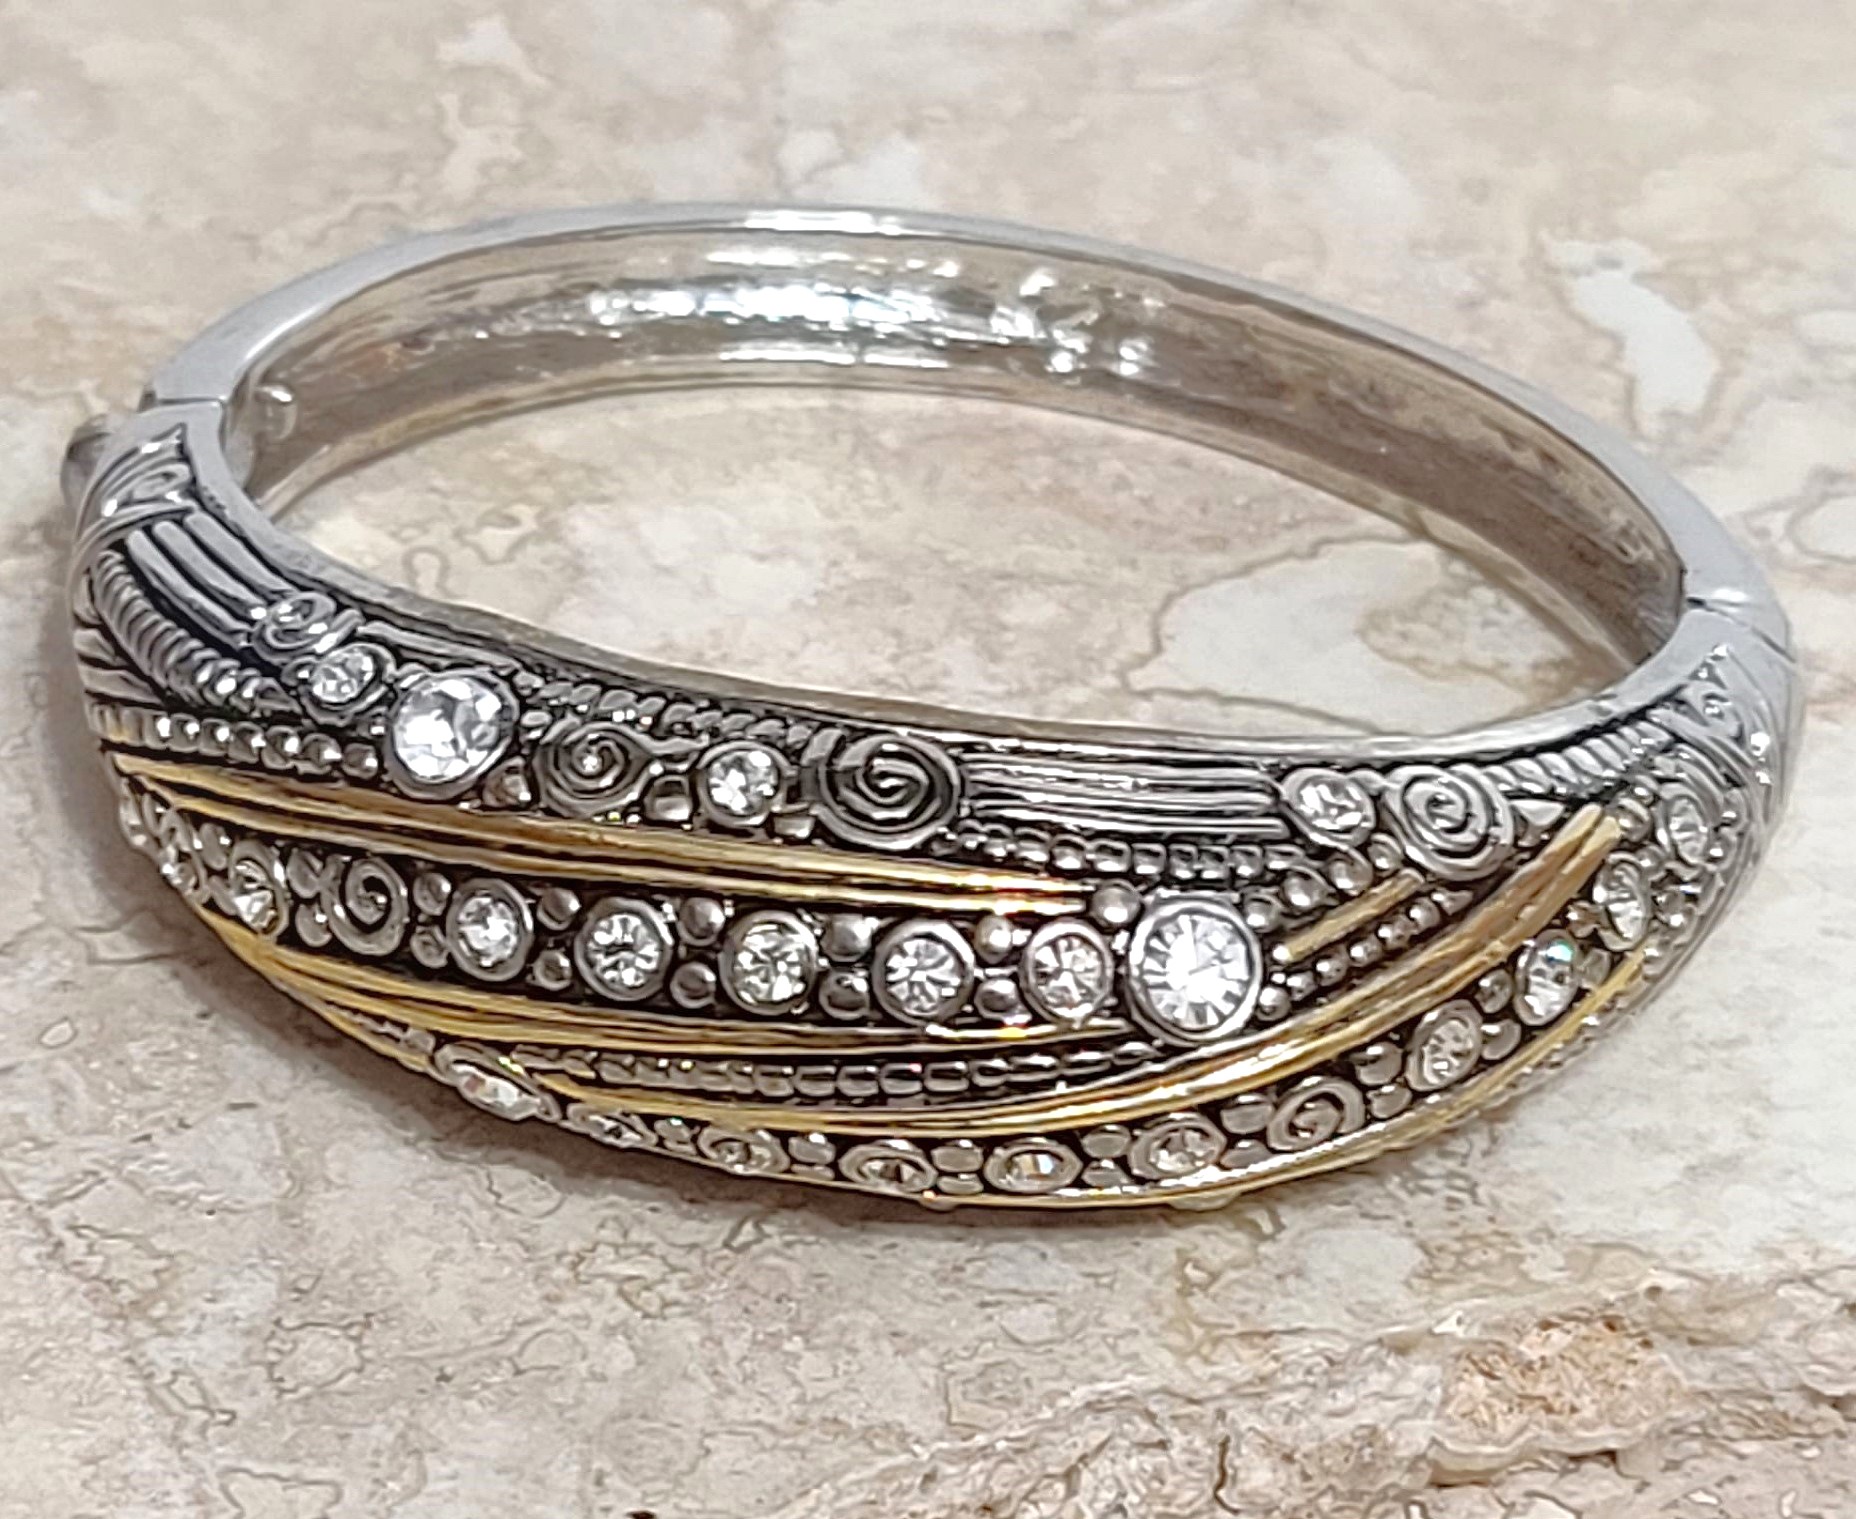 Rhinestone bangle bracelet, two tone gold and silver fashion bracelet